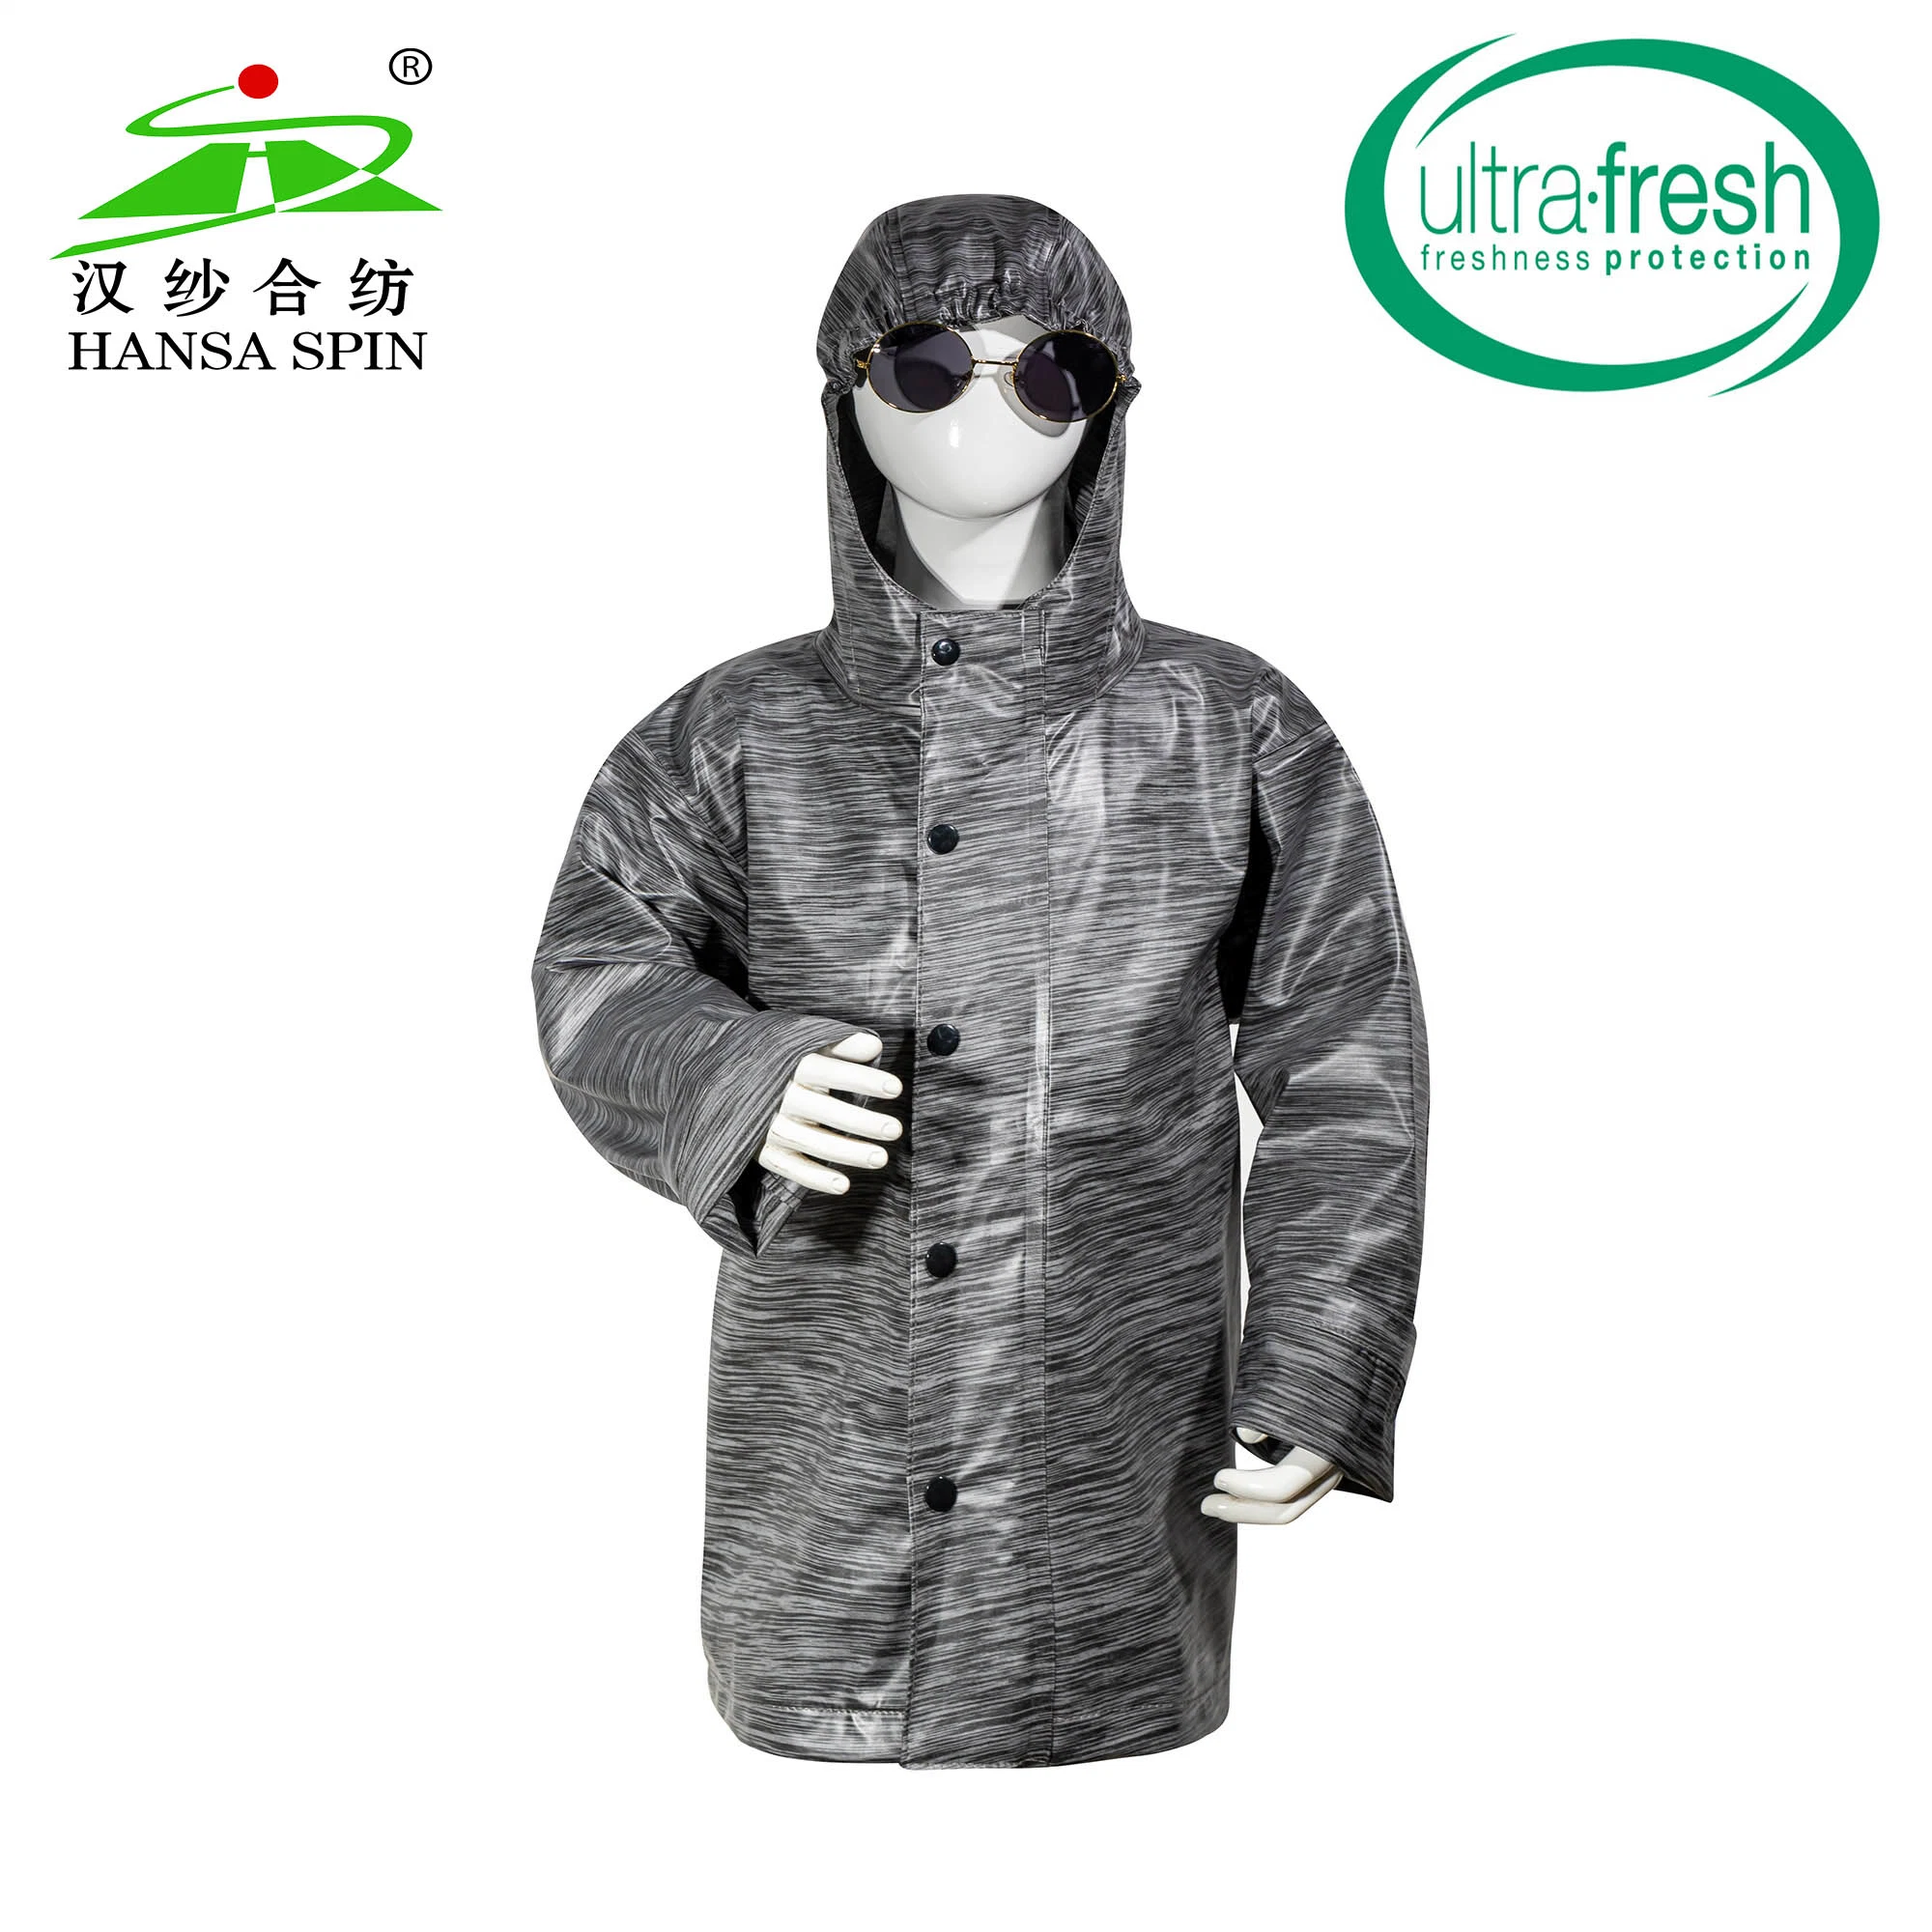 Достичь высокой эластичности мягких печать TPU кожа для куртка /одежды для установки вне помещений